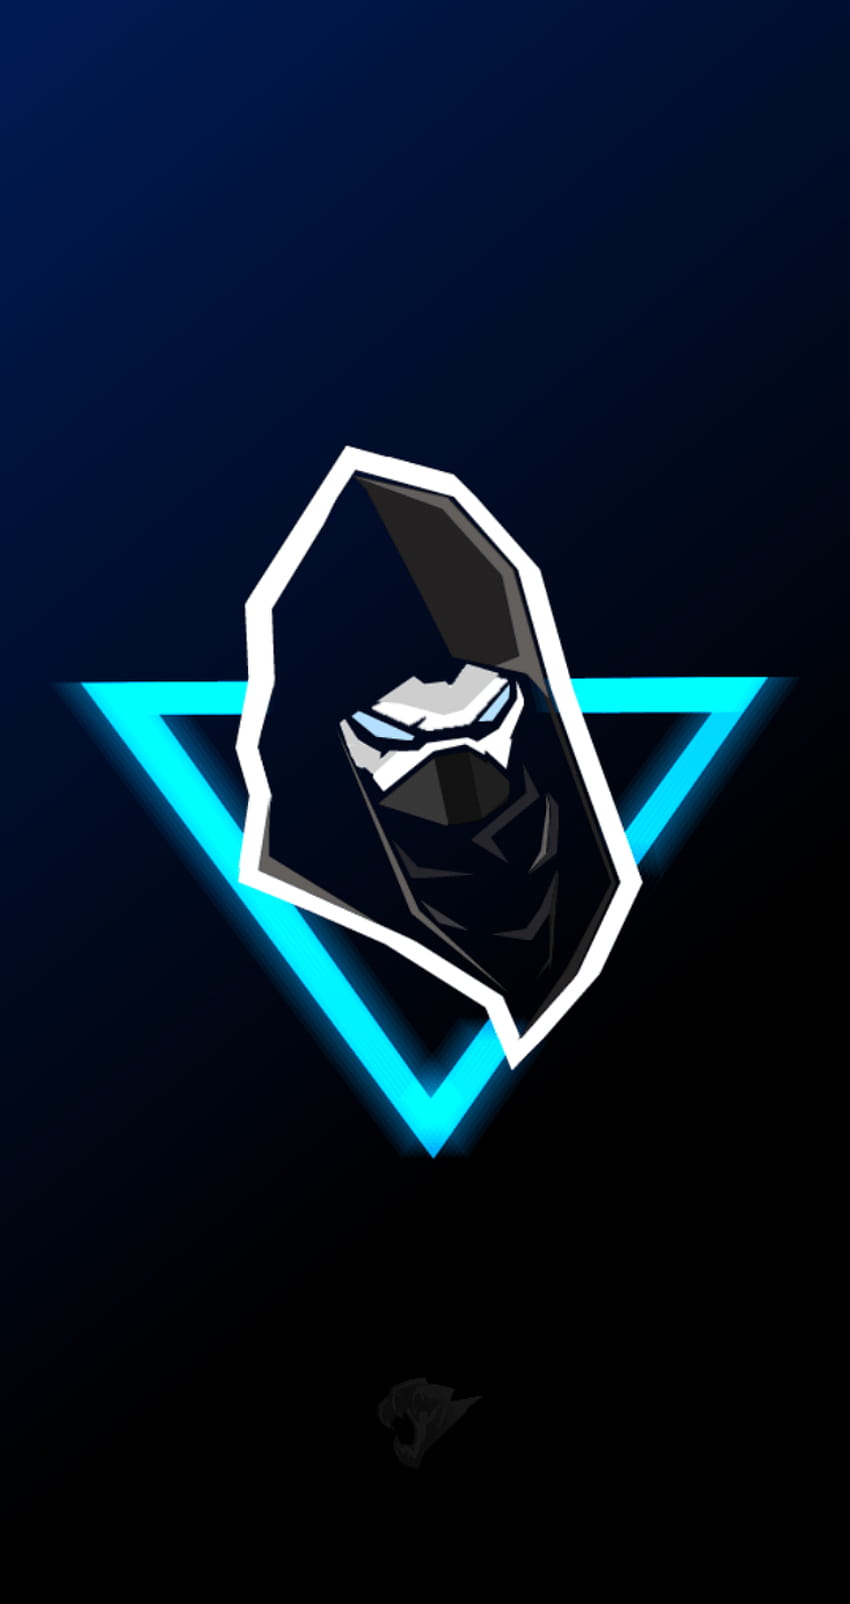 Enforcer mascot logo, fortnite, shroud logo HD phone wallpaper